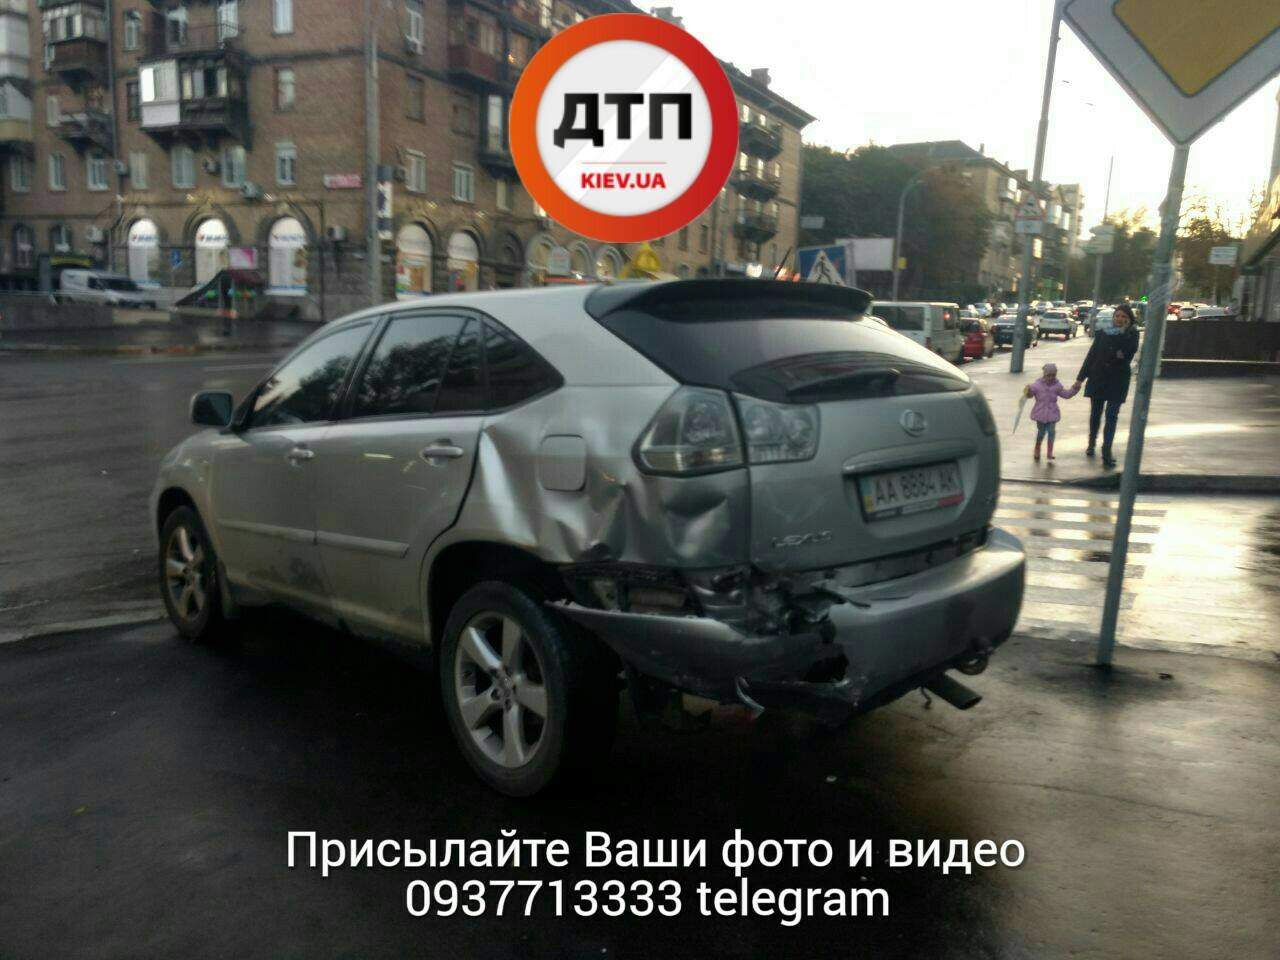 ДТП в Киеве: от удара автомобиль развернуло и отбросило на встречку (фото)